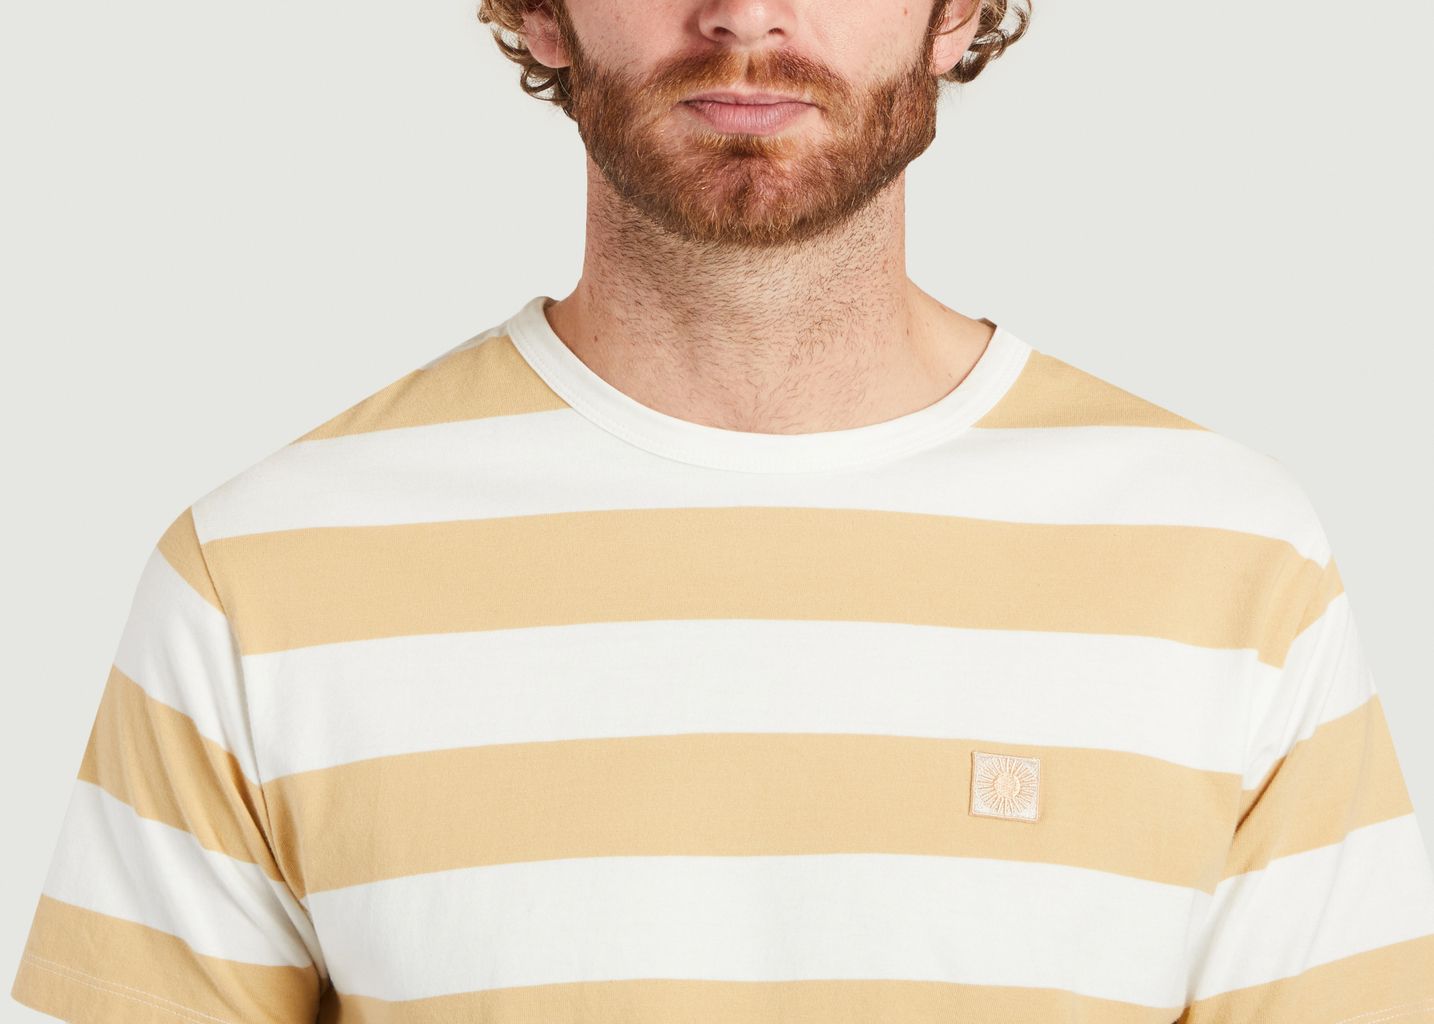 Striped organic cotton T-shirt - Thinking Mu 